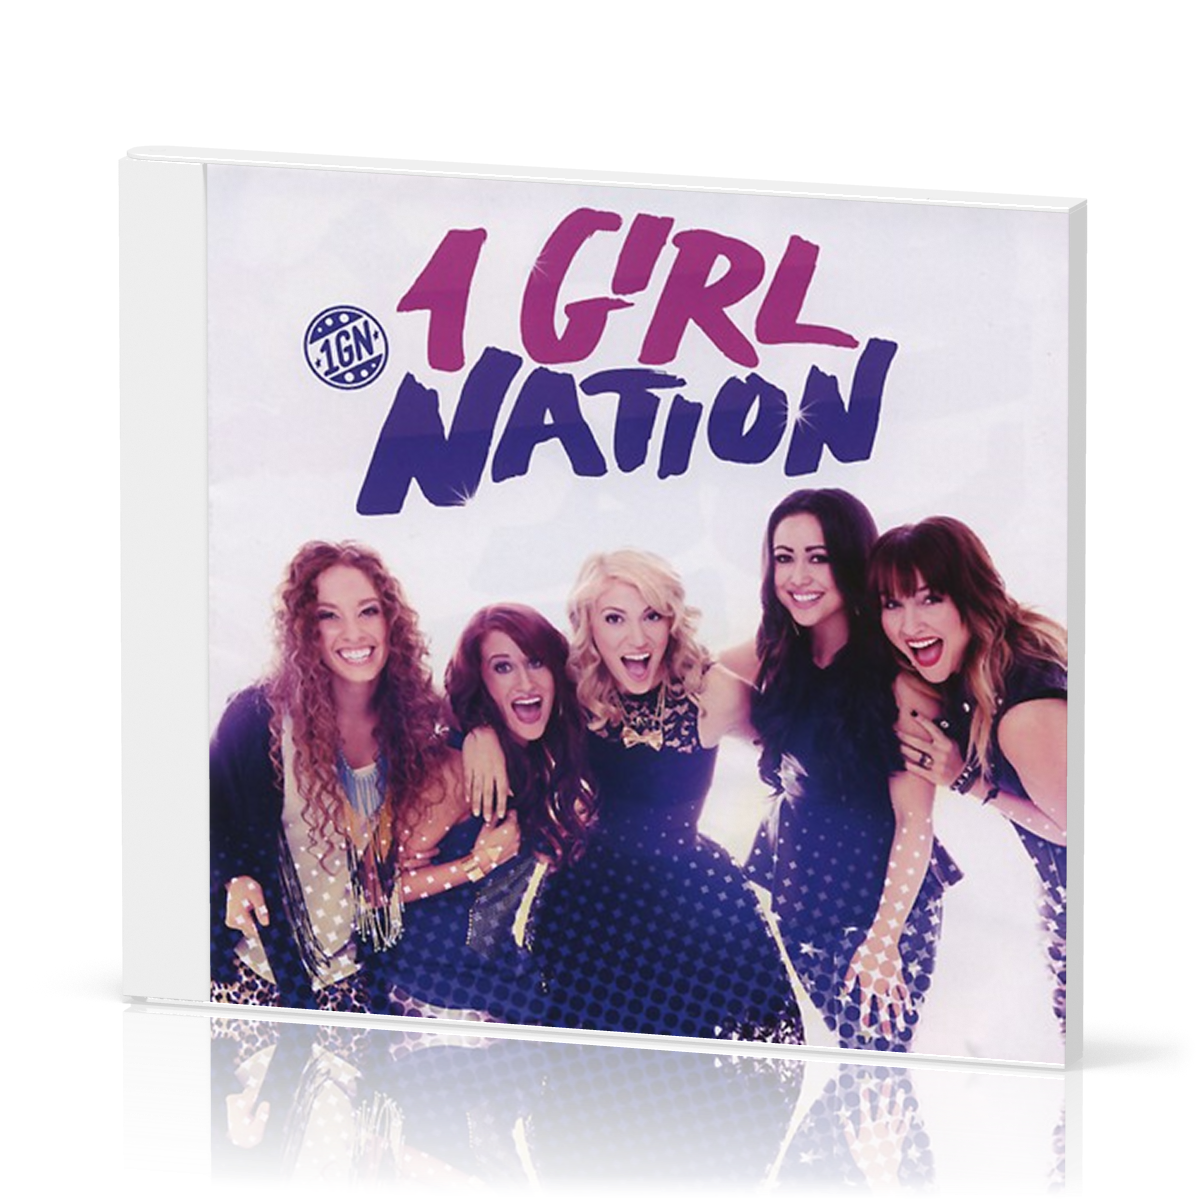 1 GIRL NATION - CD